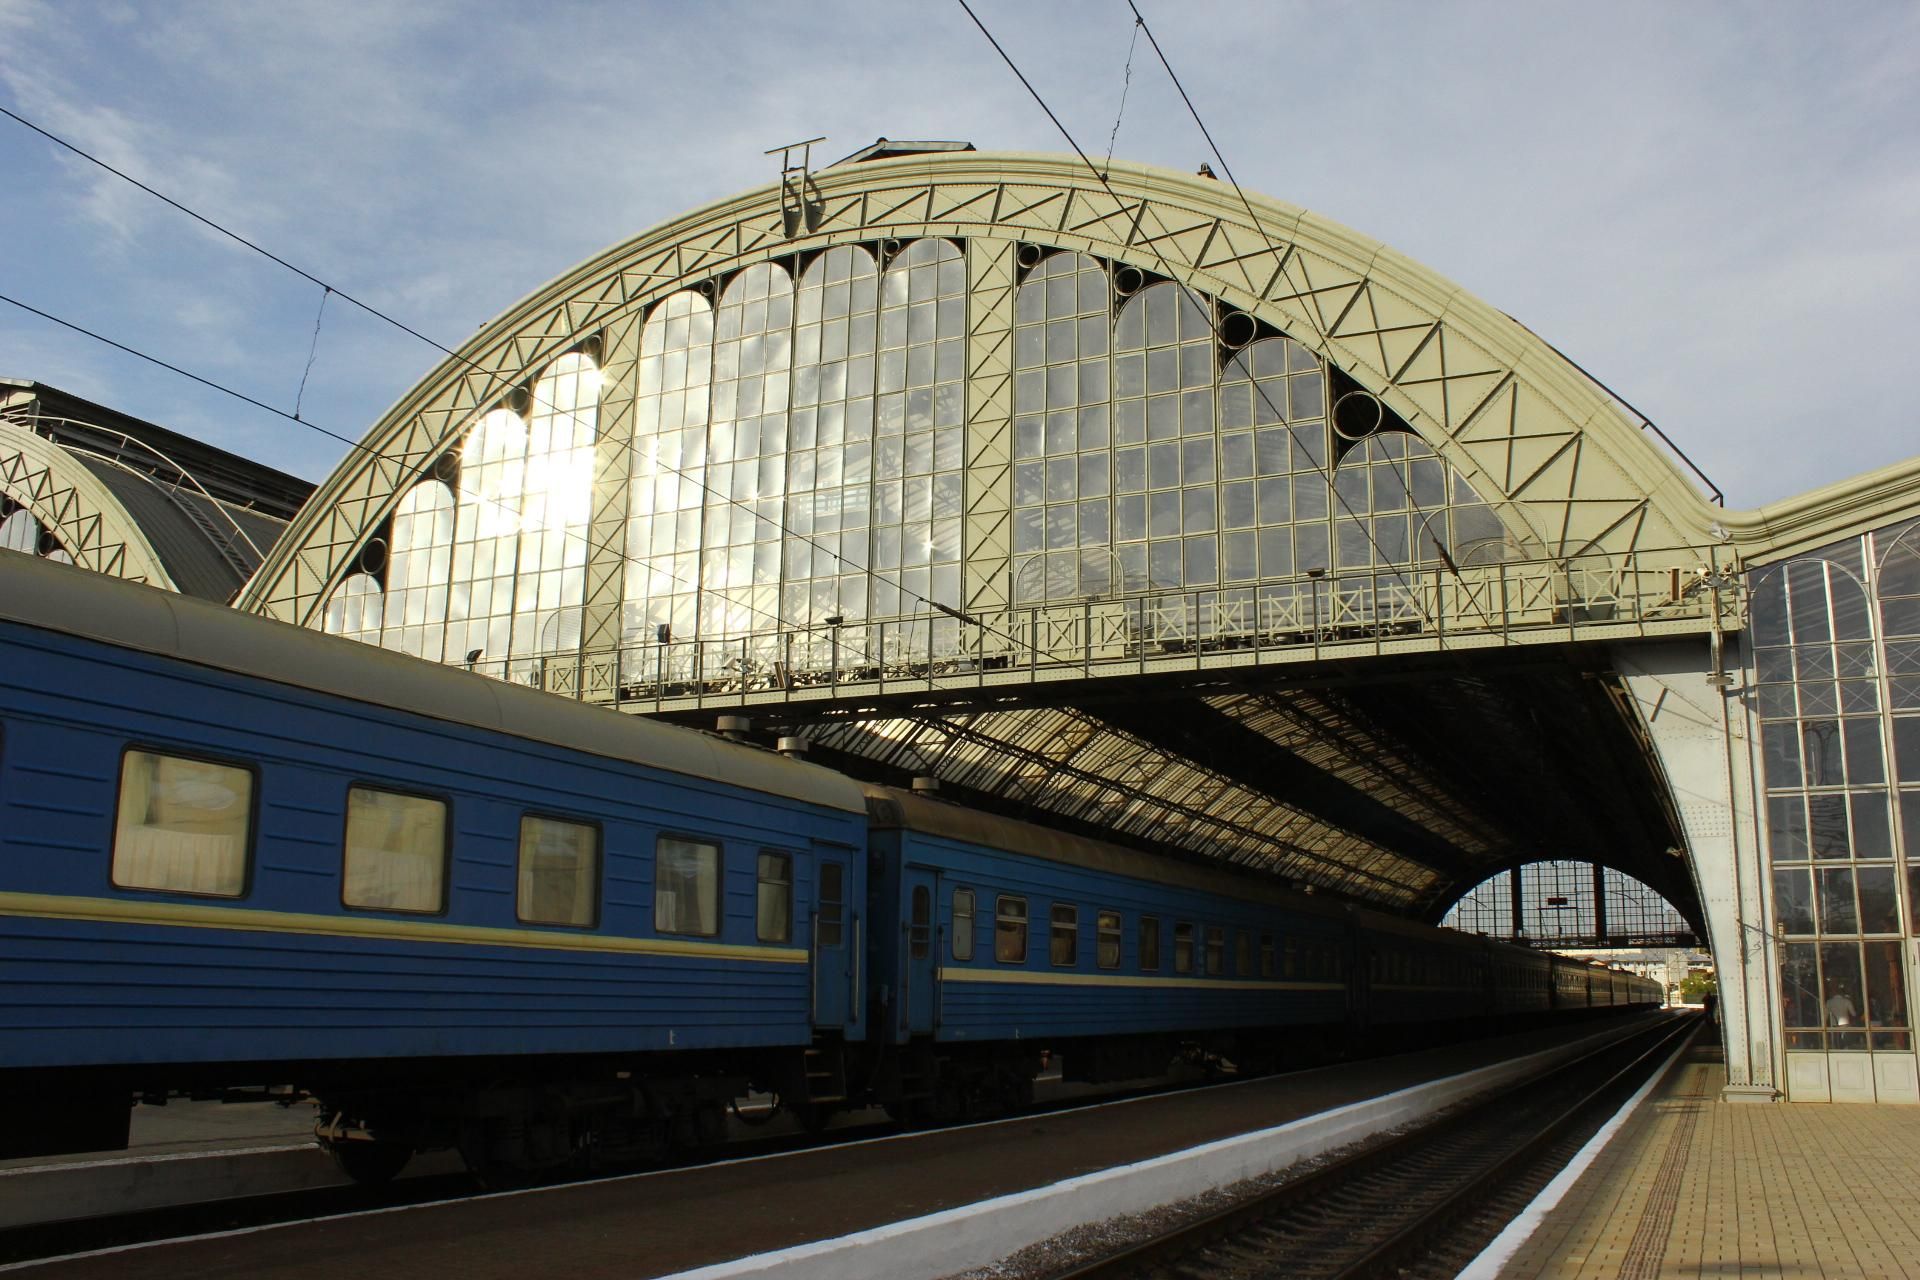 Їде по спеці 29 годин: Укрзалізниця прибрала кондиціонування в поїзді - Новини Маріуполя сьогодні - 24 Канал